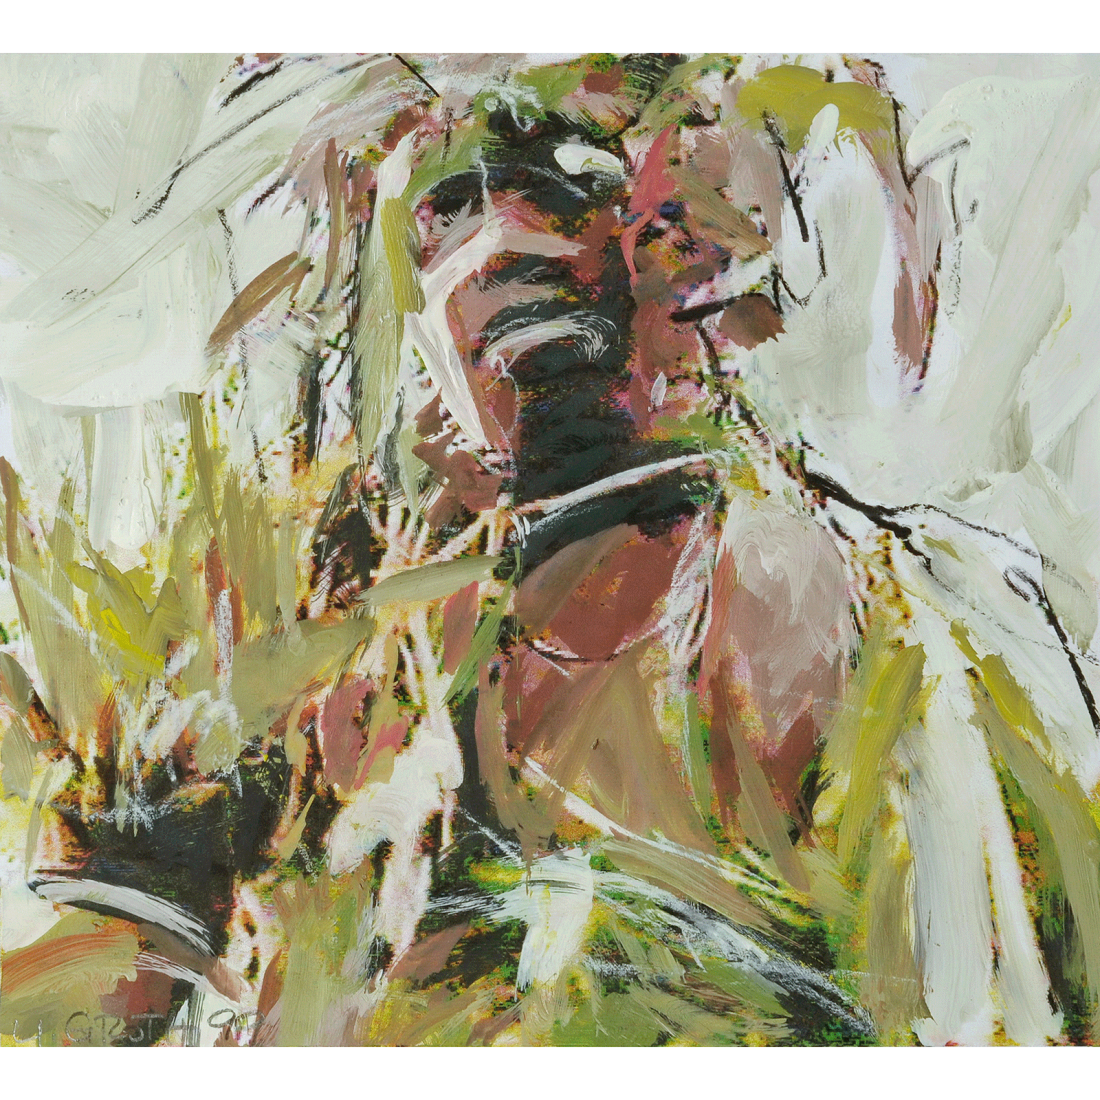 Mann im Blattschmuck 2, 1999, 21x28cm, Foto, Acrylfarbe, Kohle und Kreide auf Papier